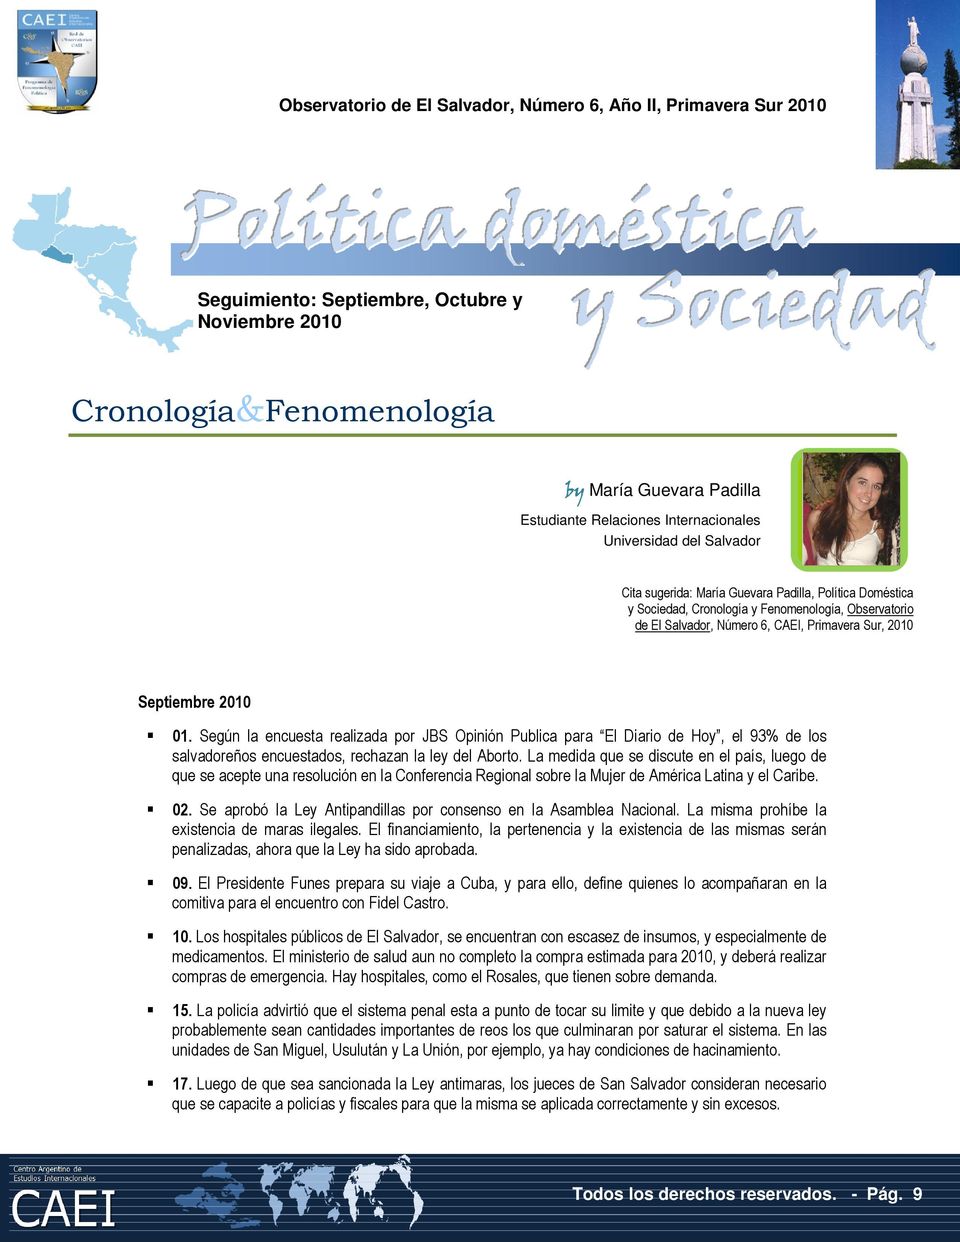 Según la encuesta realizada por JBS Opinión Publica para El Diario de Hoy, el 93% de los salvadoreños encuestados, rechazan la ley del Aborto.